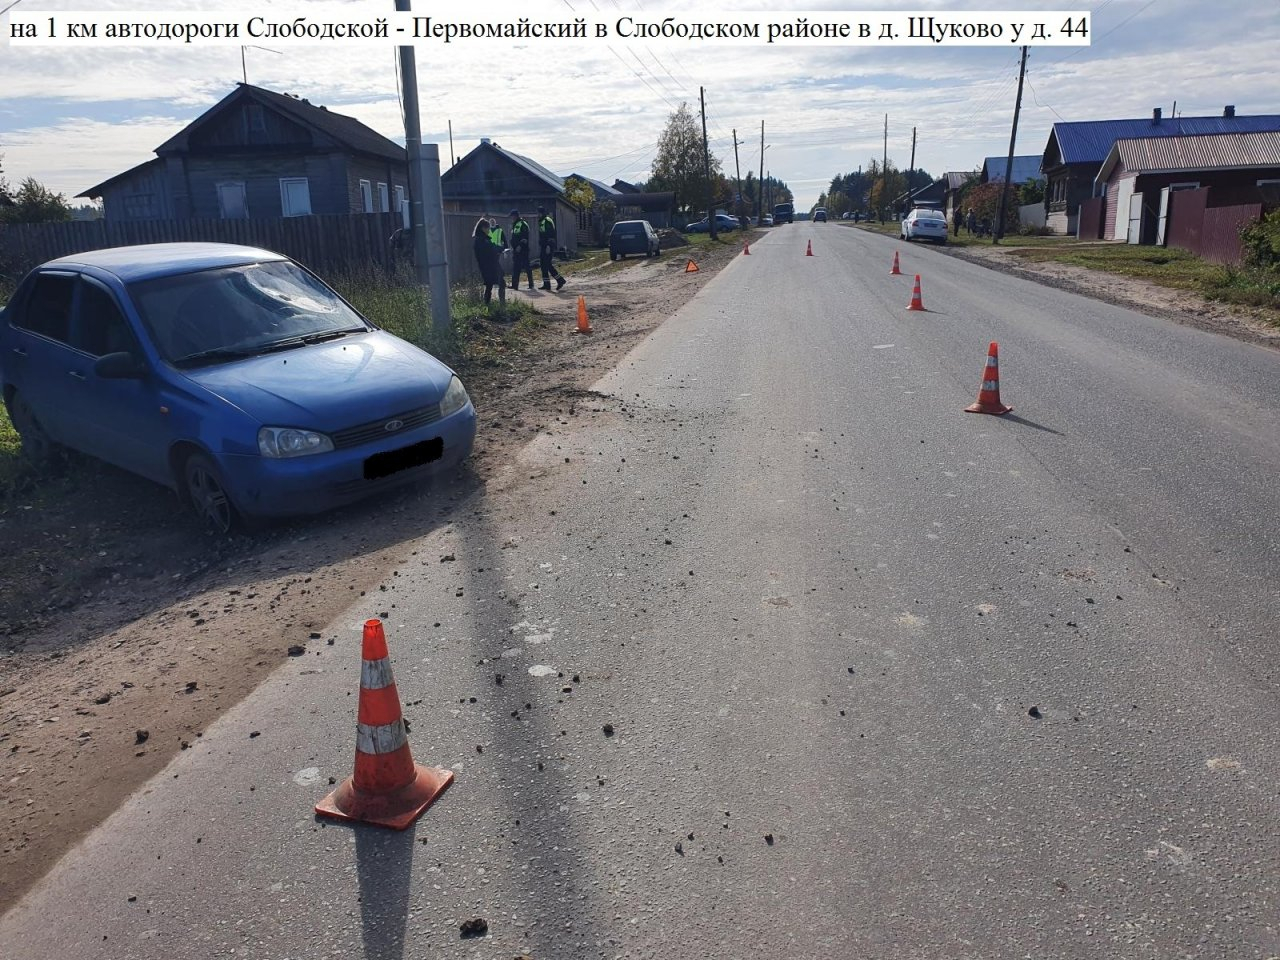 В Слободском районе водитель «Лады Калины» насмерть сбил женщину